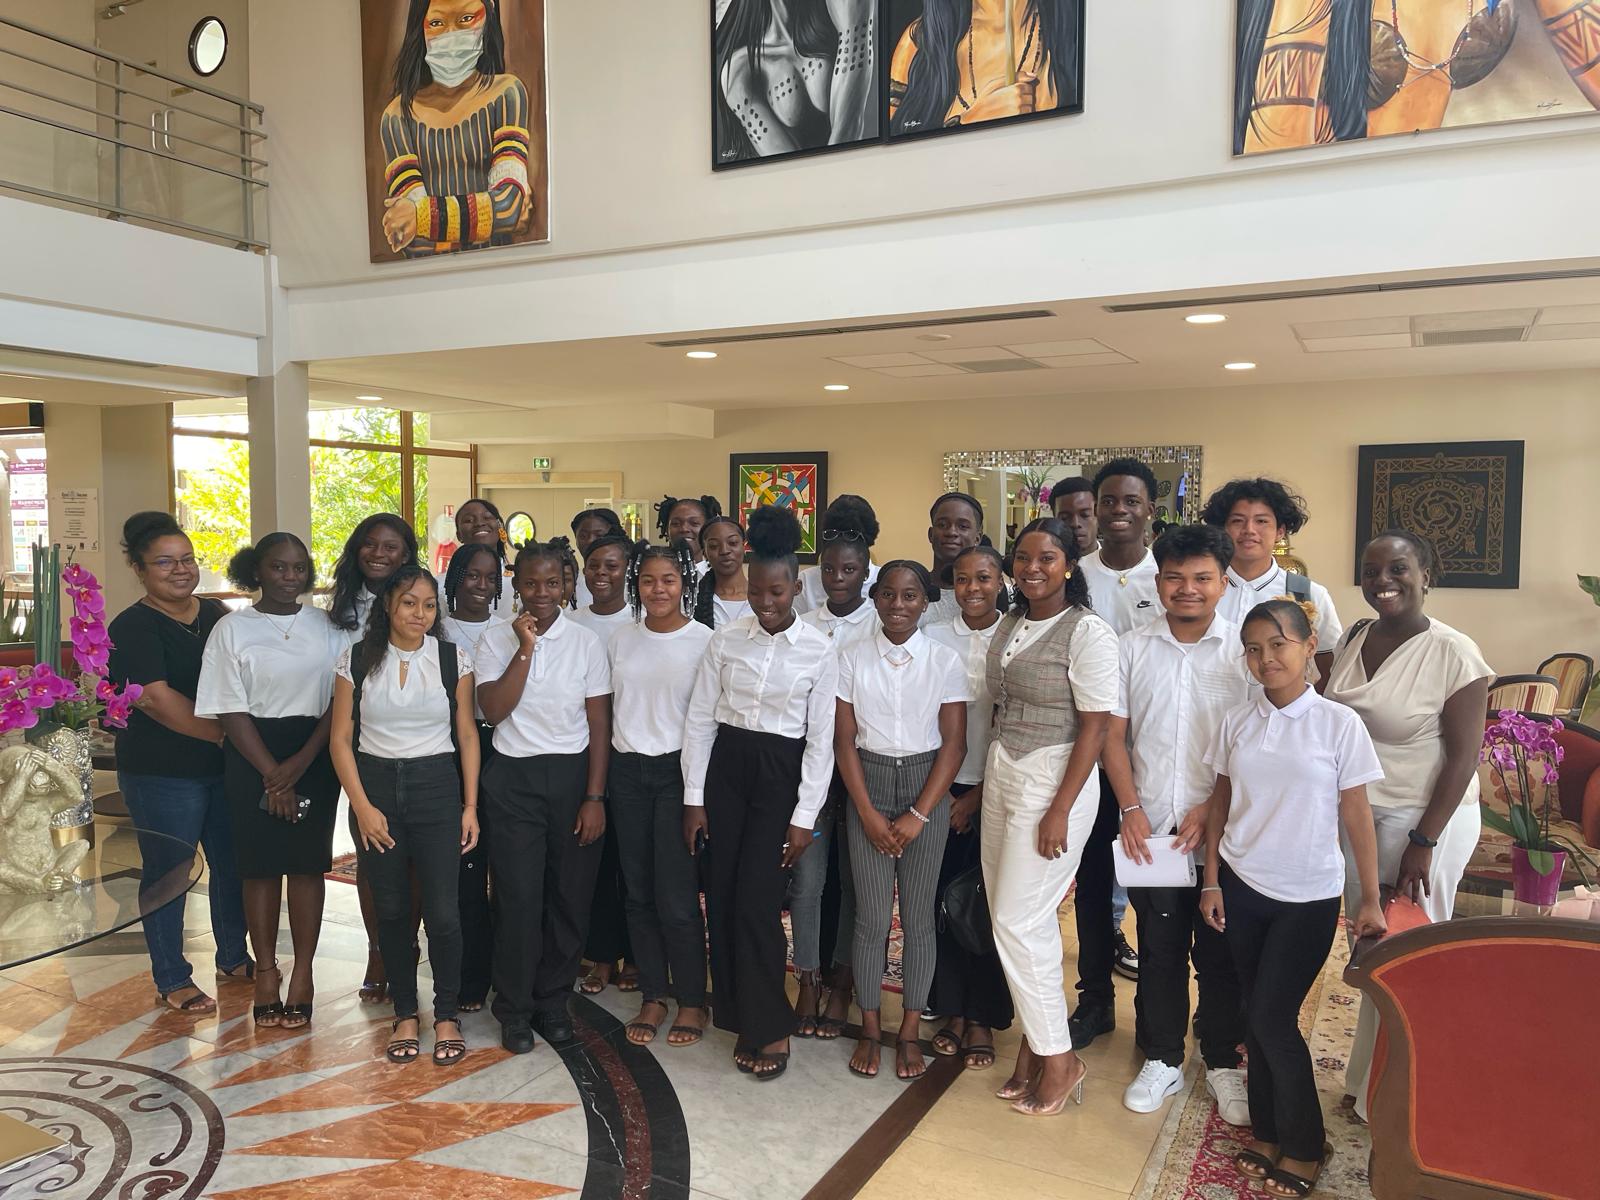 Sortie à Cayenne - à la rencontre de professionnels pour découvrir des métiers liés à l’accueil 